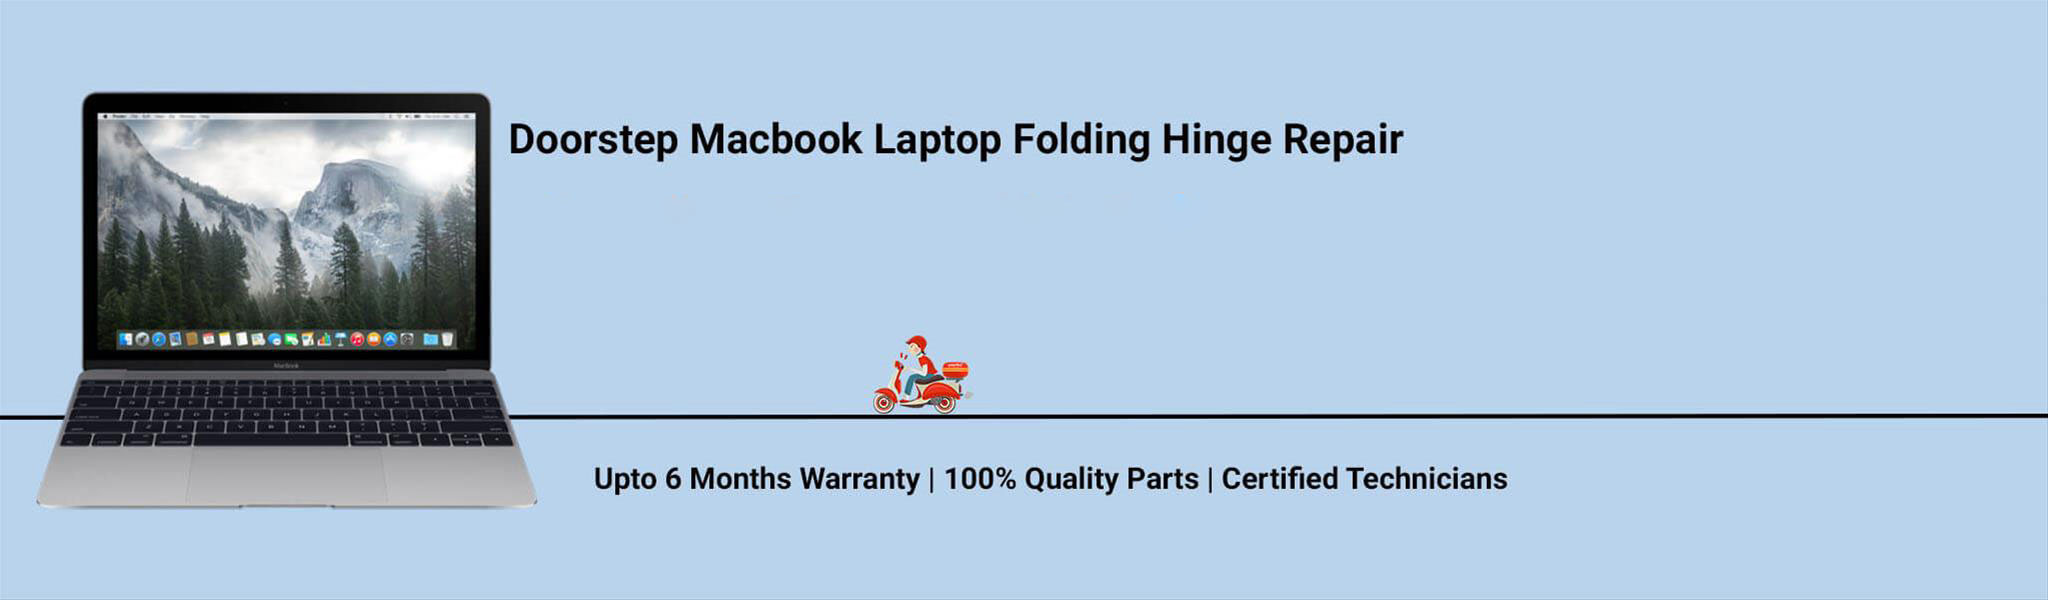 macbook-folding-hinge-repair.jpg